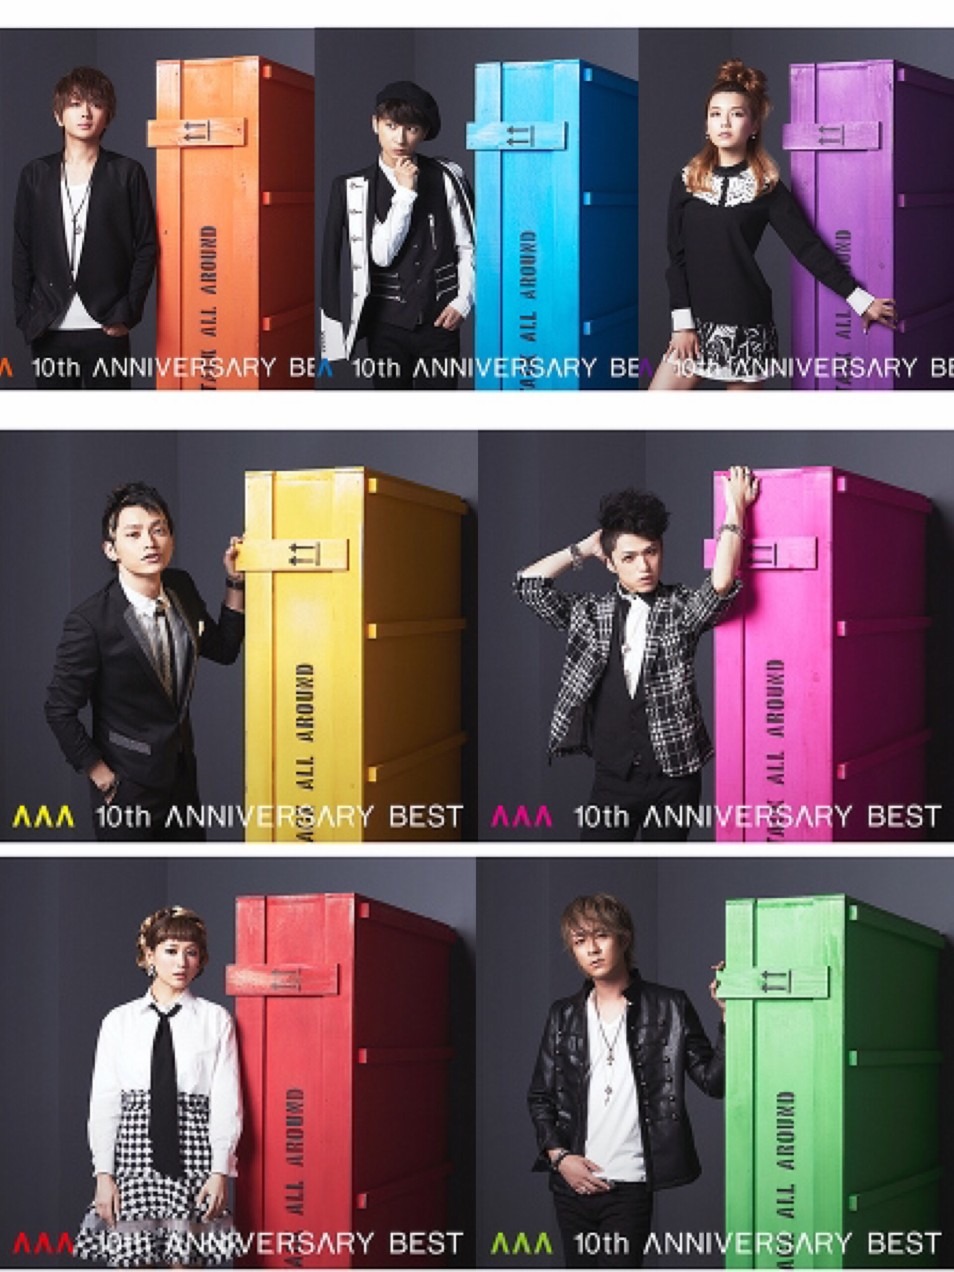 AAA 10th ANNIVERSARY BEST | Jpop Wiki | Fandom